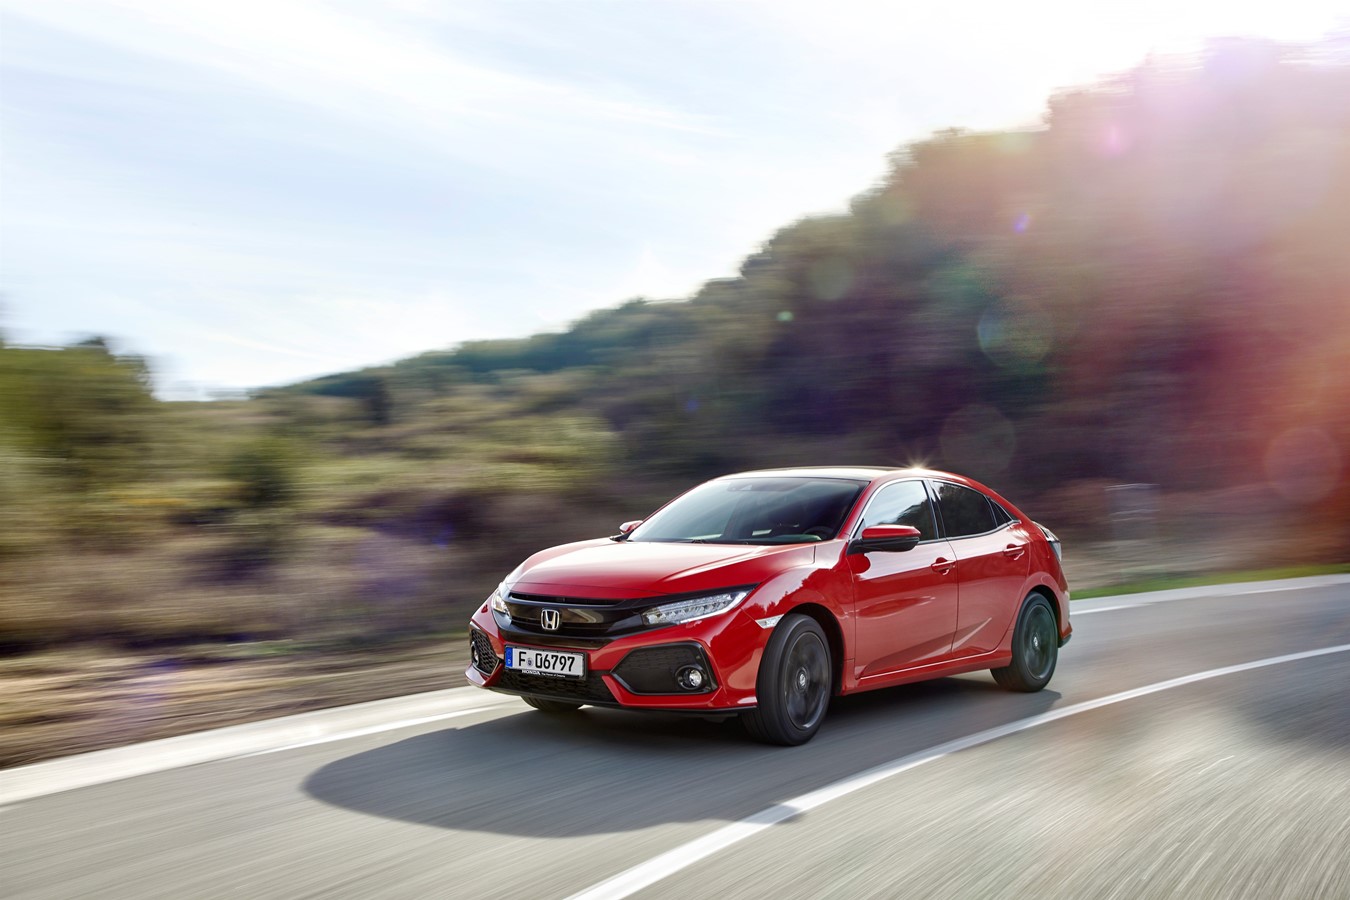 Schweizer Premiere für den neuen Civic an den Honda Test Days